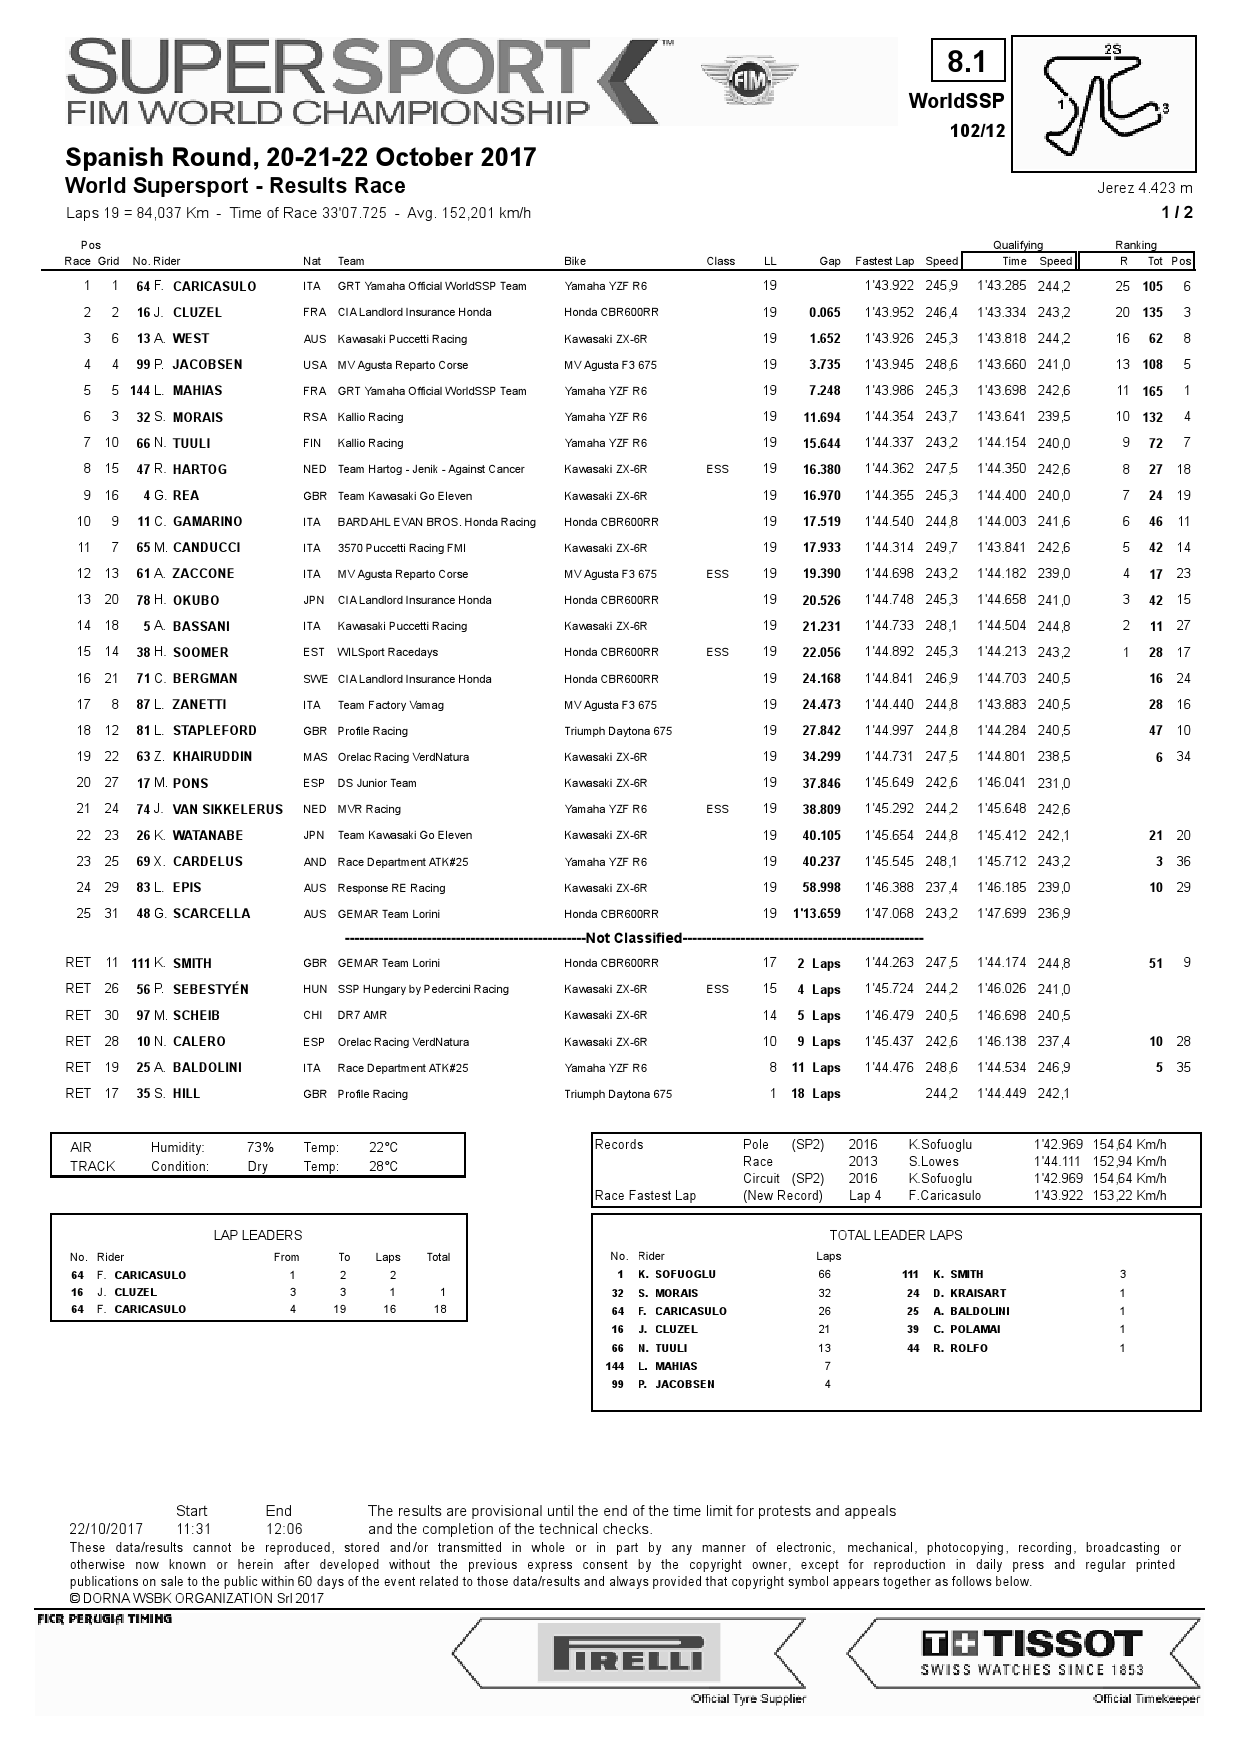 Результаты гонки World Supersport на Circuito de Jerez, 22/10/2017